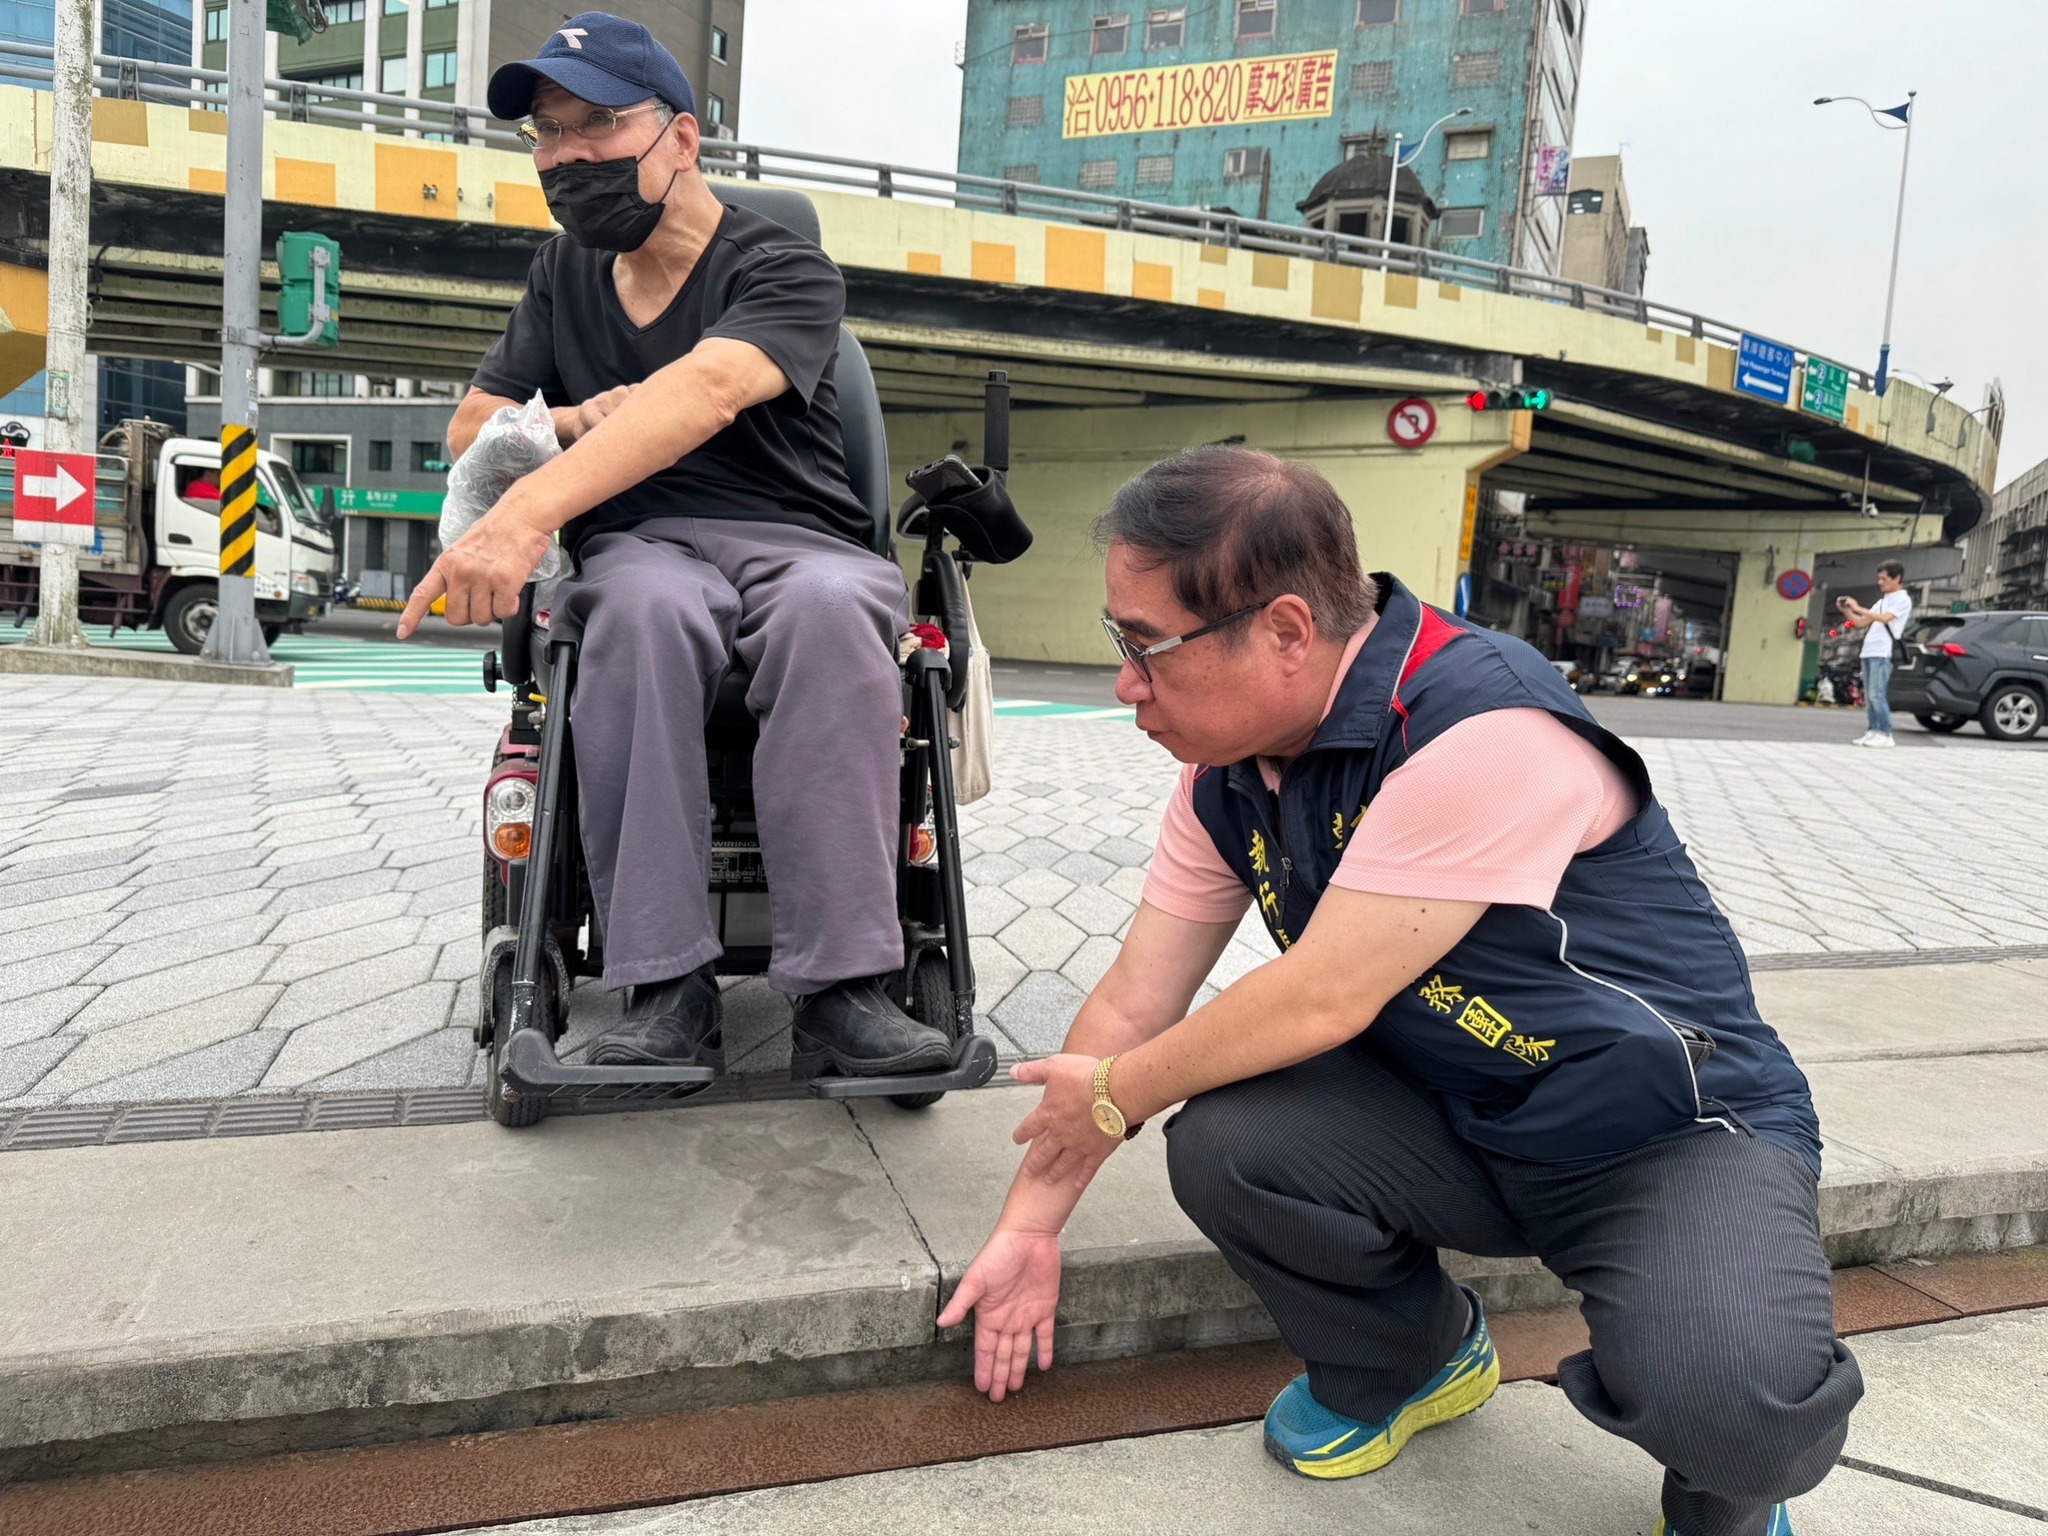 基隆市忠一路人行道与海洋广场交接处，有轮椅族反映是「不友善设施」。图／韩世昱提供